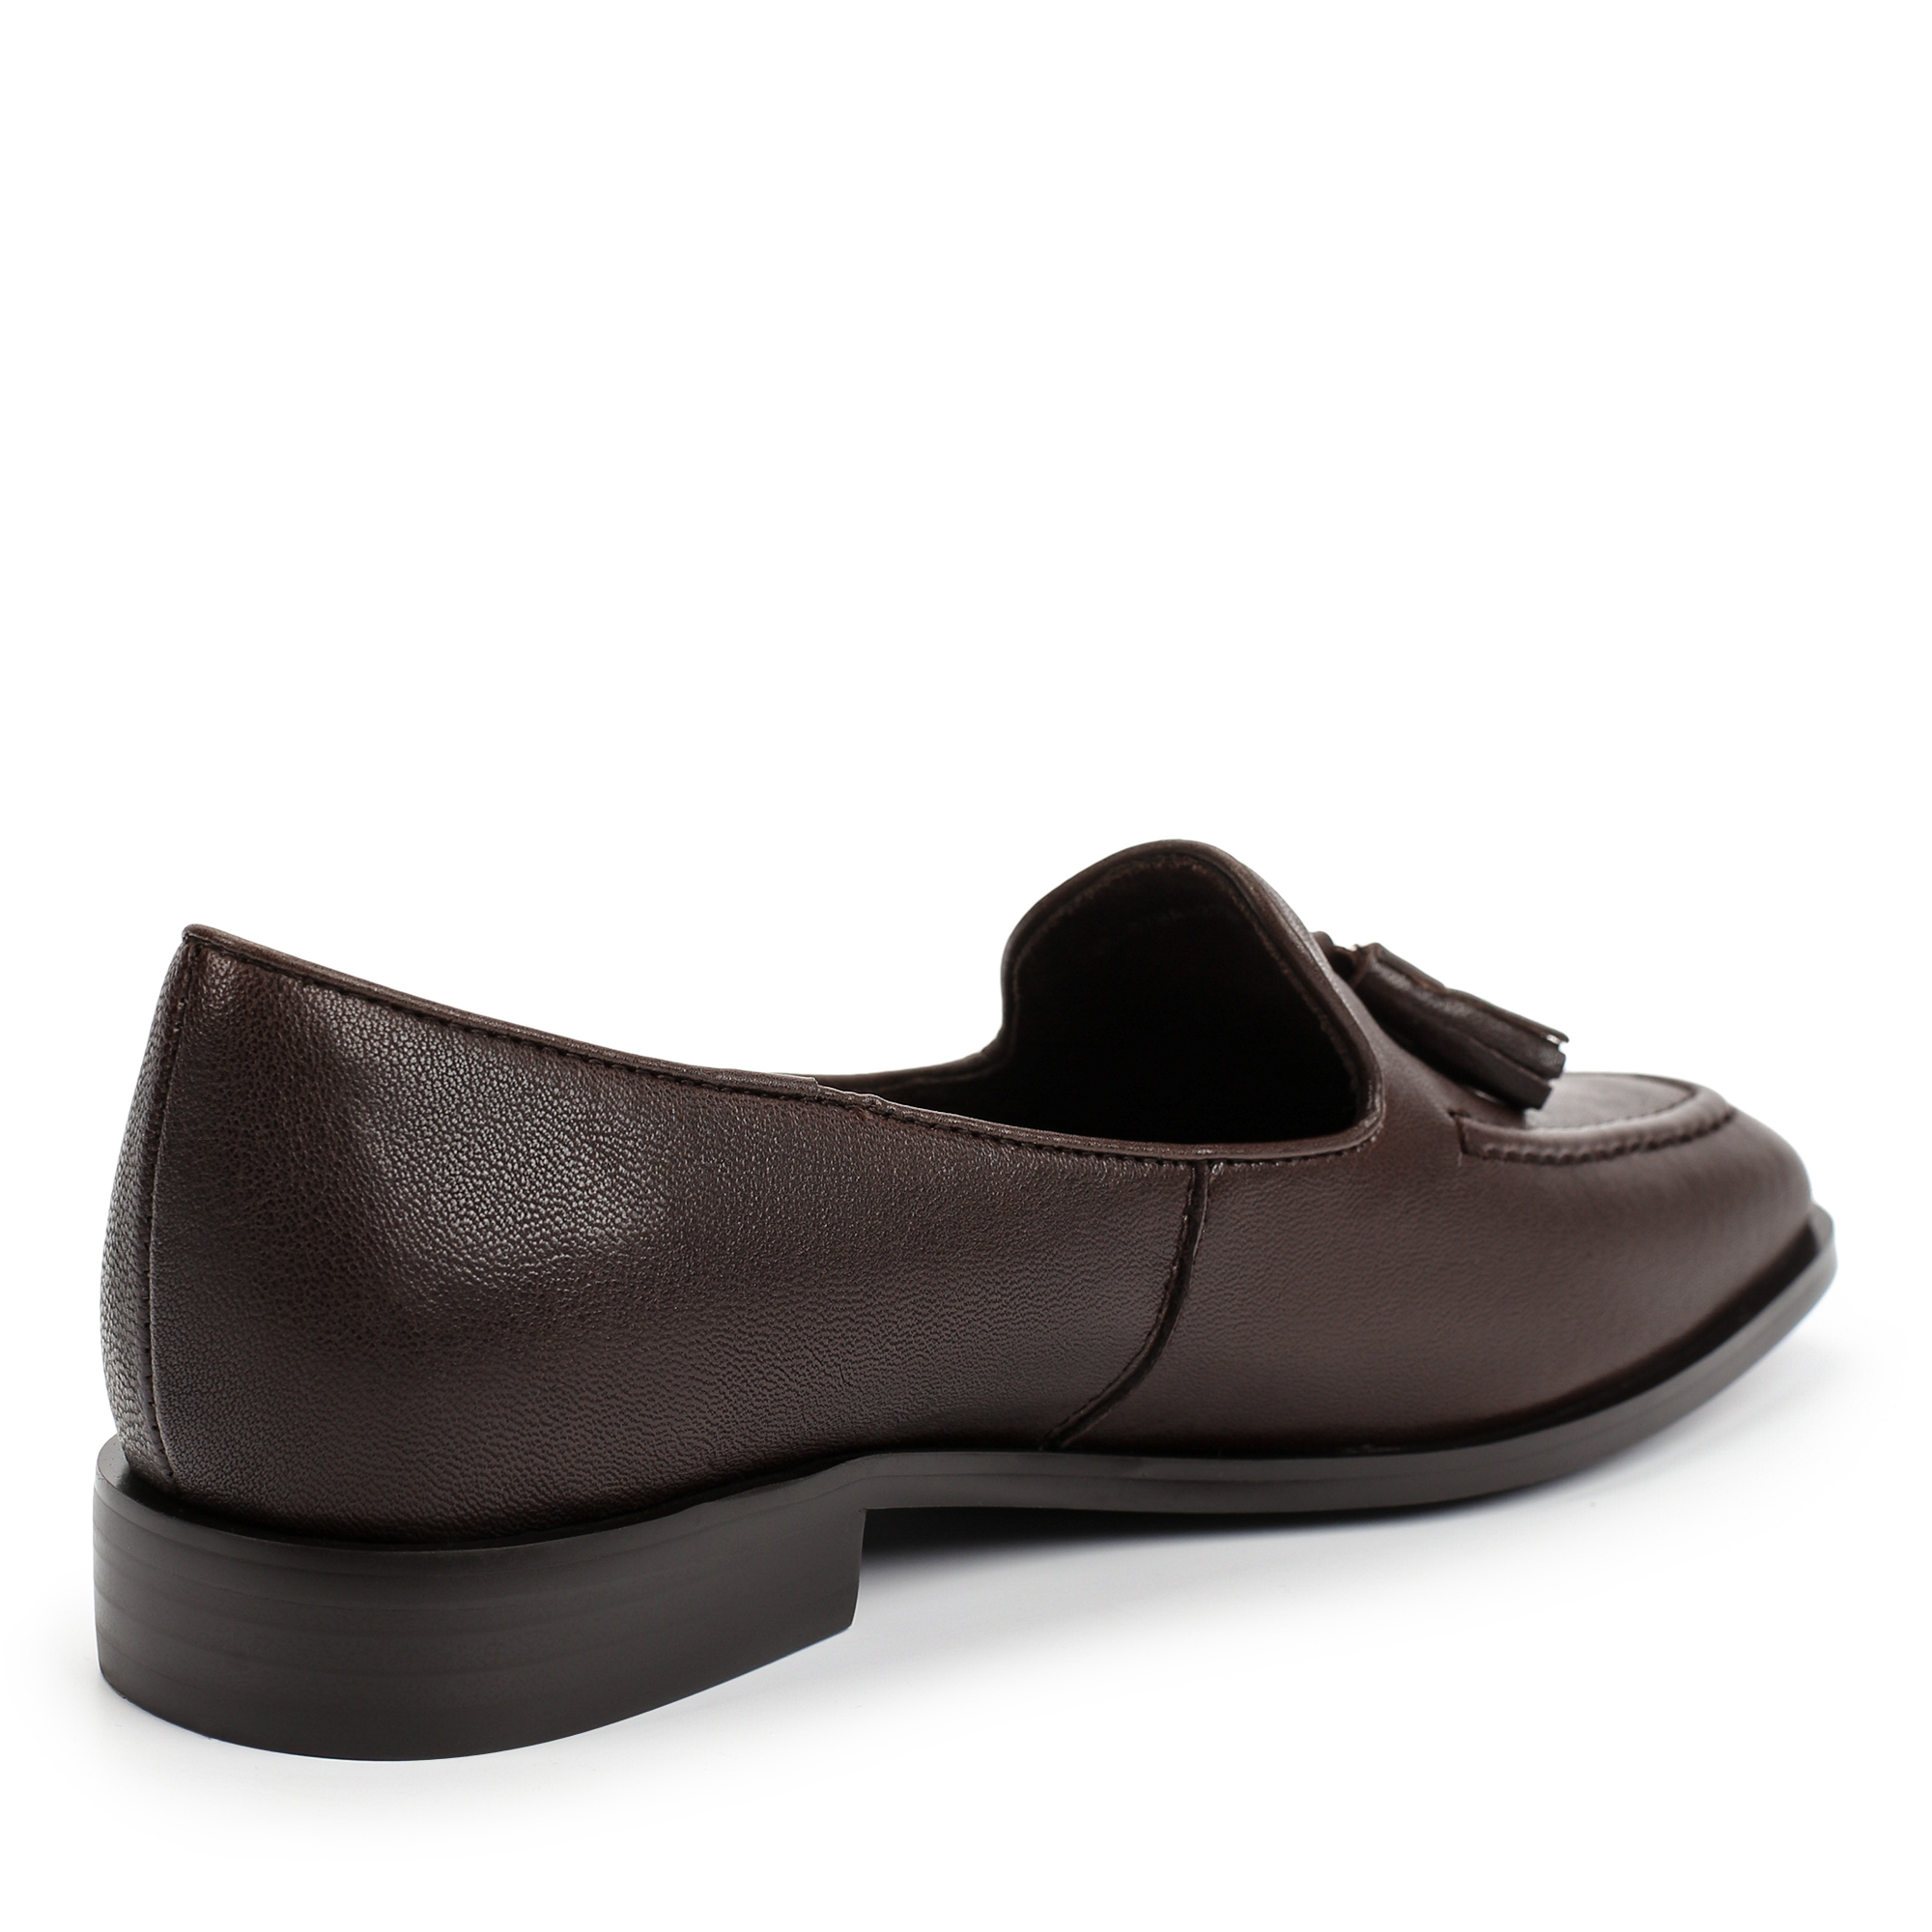 Туфли Thomas Munz 233-879A-2109, цвет темно-коричневый, размер 38 - фото 3